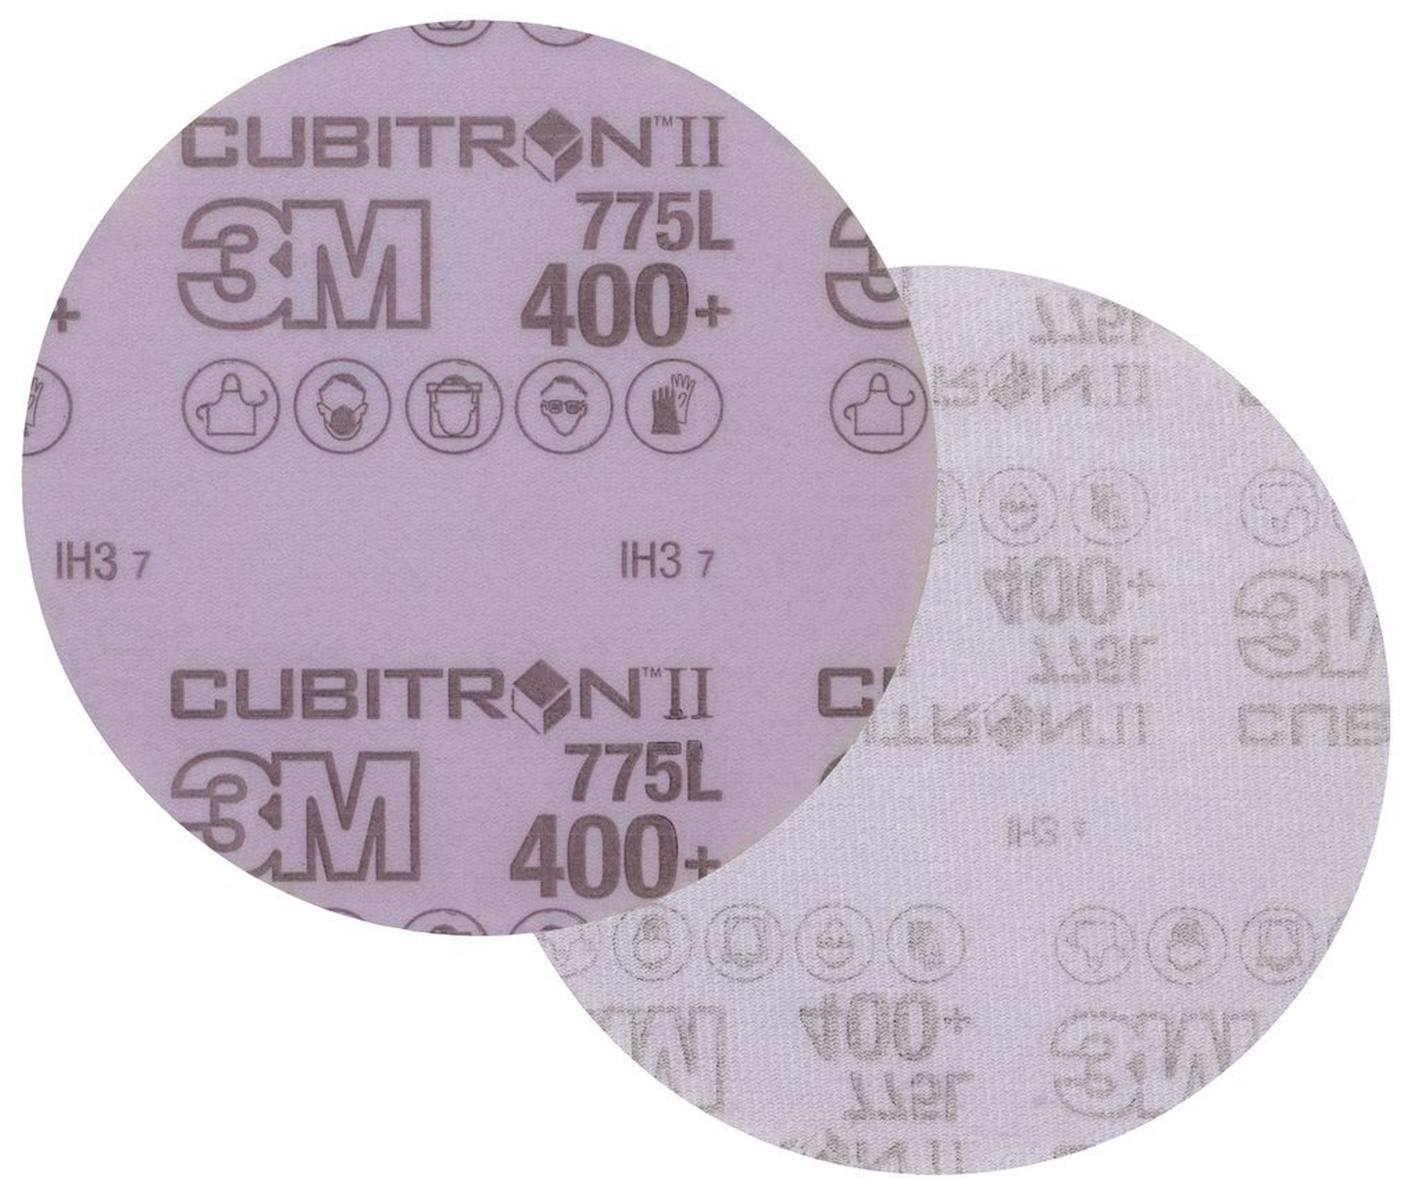 3M Cubitron II Hookit Filmscheibe 775L, 125 mm, 400+, ungelocht #05055